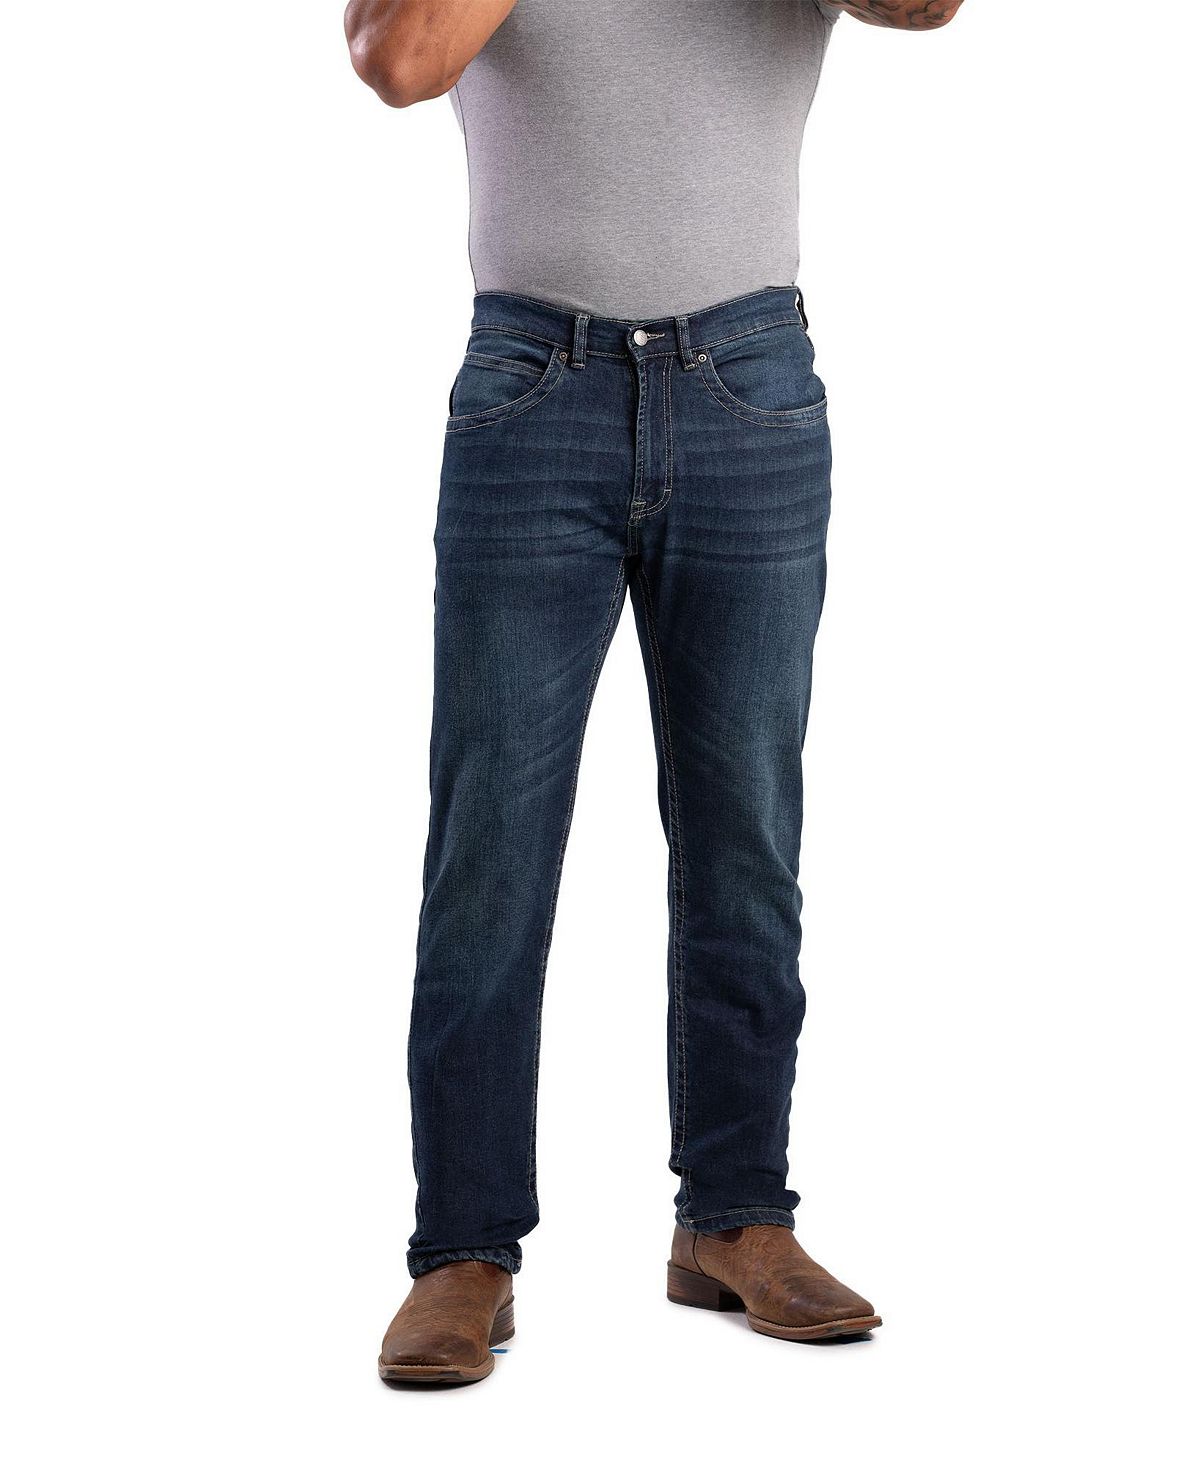 Мужские джинсы прямого кроя Big & Tall Highland Flex Fit Berne джинсы straight leg multiflex noos blend цвет grey